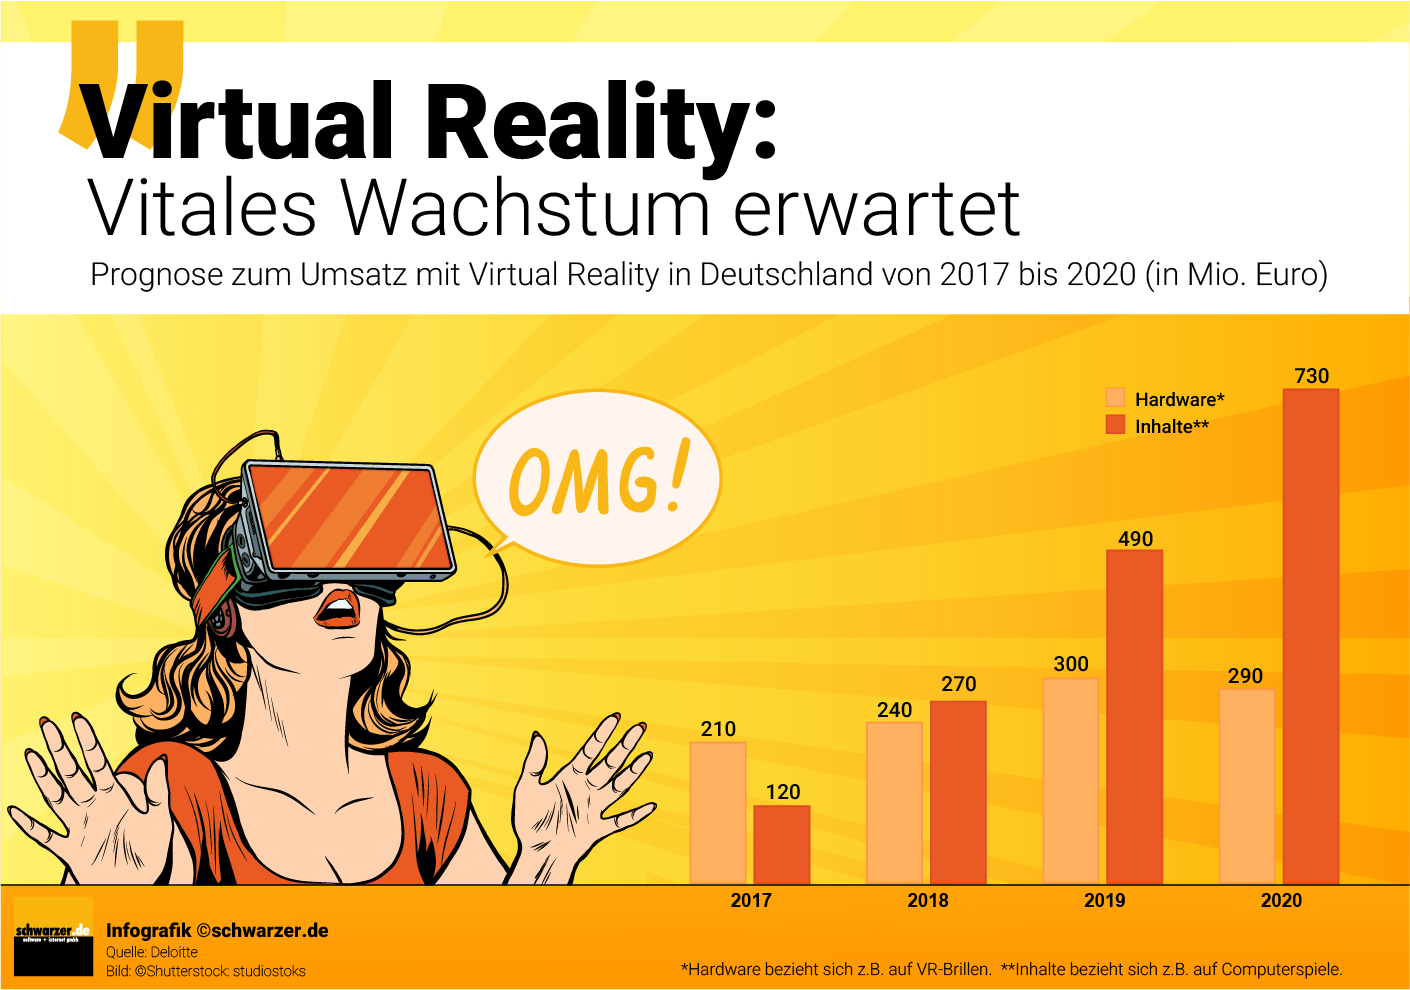 Infografik: Vitales Wachstum im Bereich Virtual Reality erwartet - Umsatz-Prognose in Deutschland 2017-2020 in Mio. Euro.